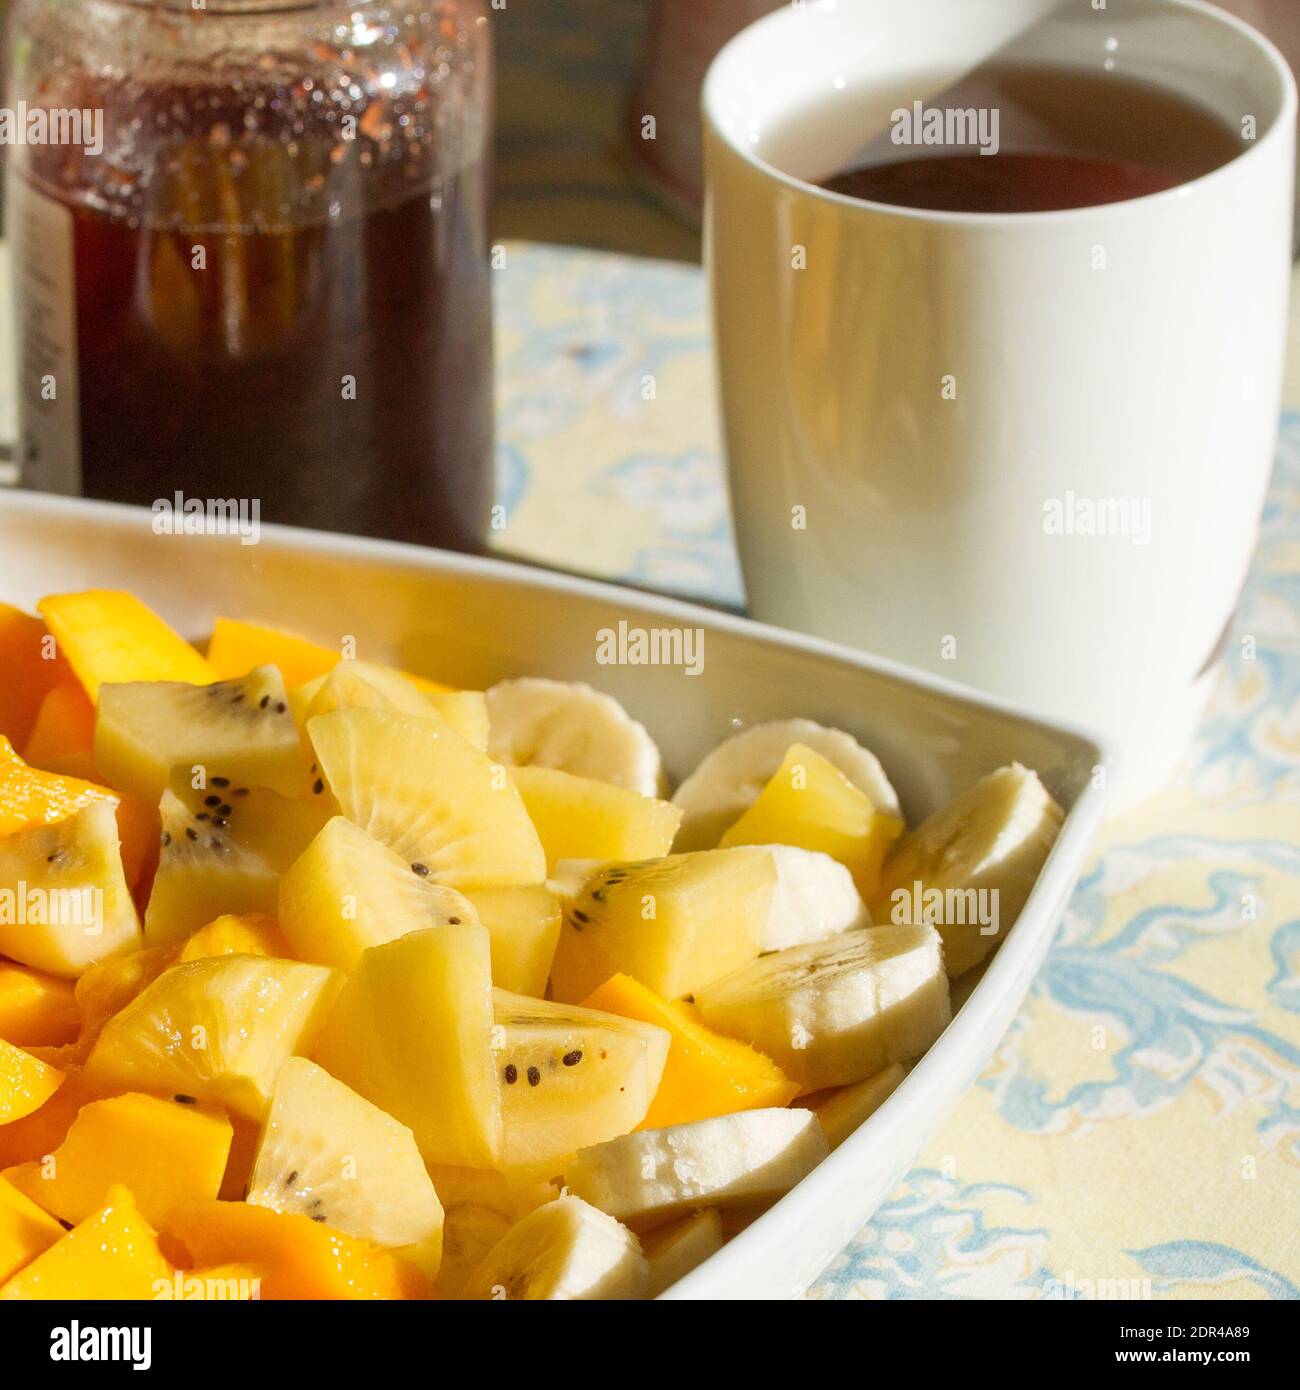 Grande assiette de fruits exotiques frais pour le petit déjeuner, mangue, bananes, kiwi doré sur une table avec thé et confiture de fraises Banque D'Images